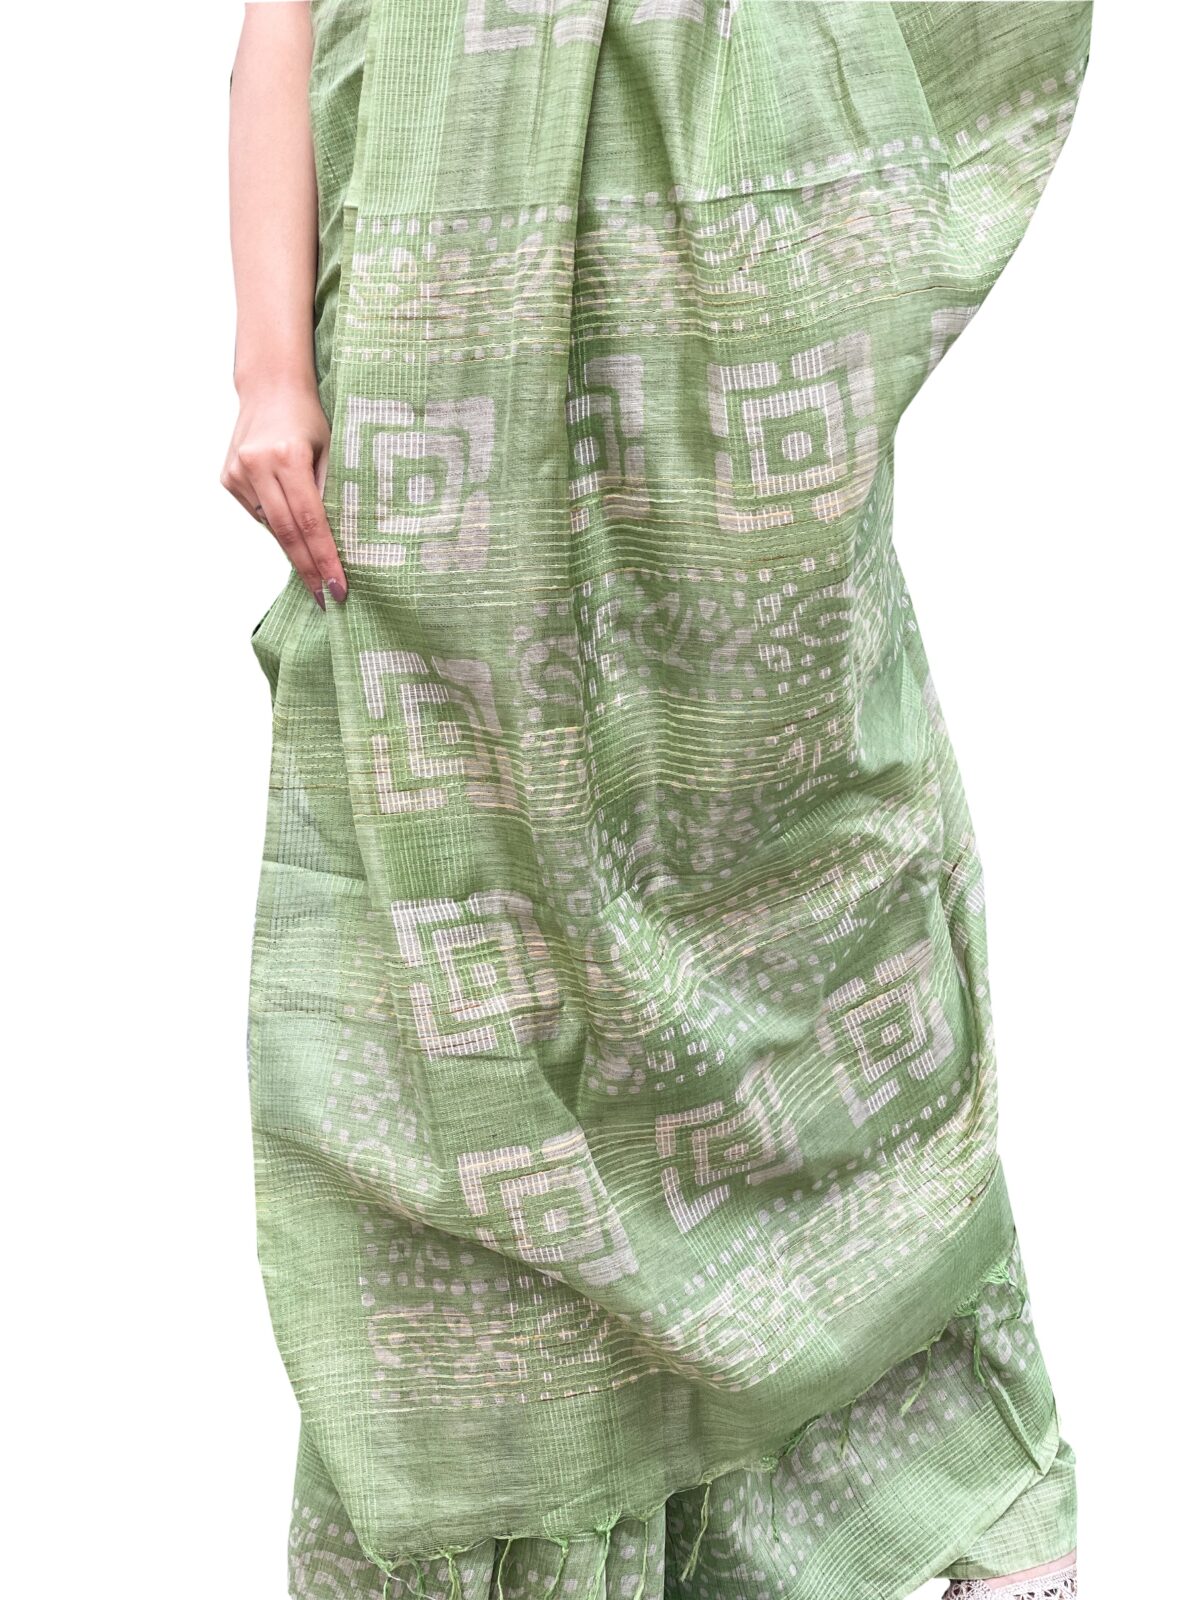 Handmade tussar silk saree with batik print